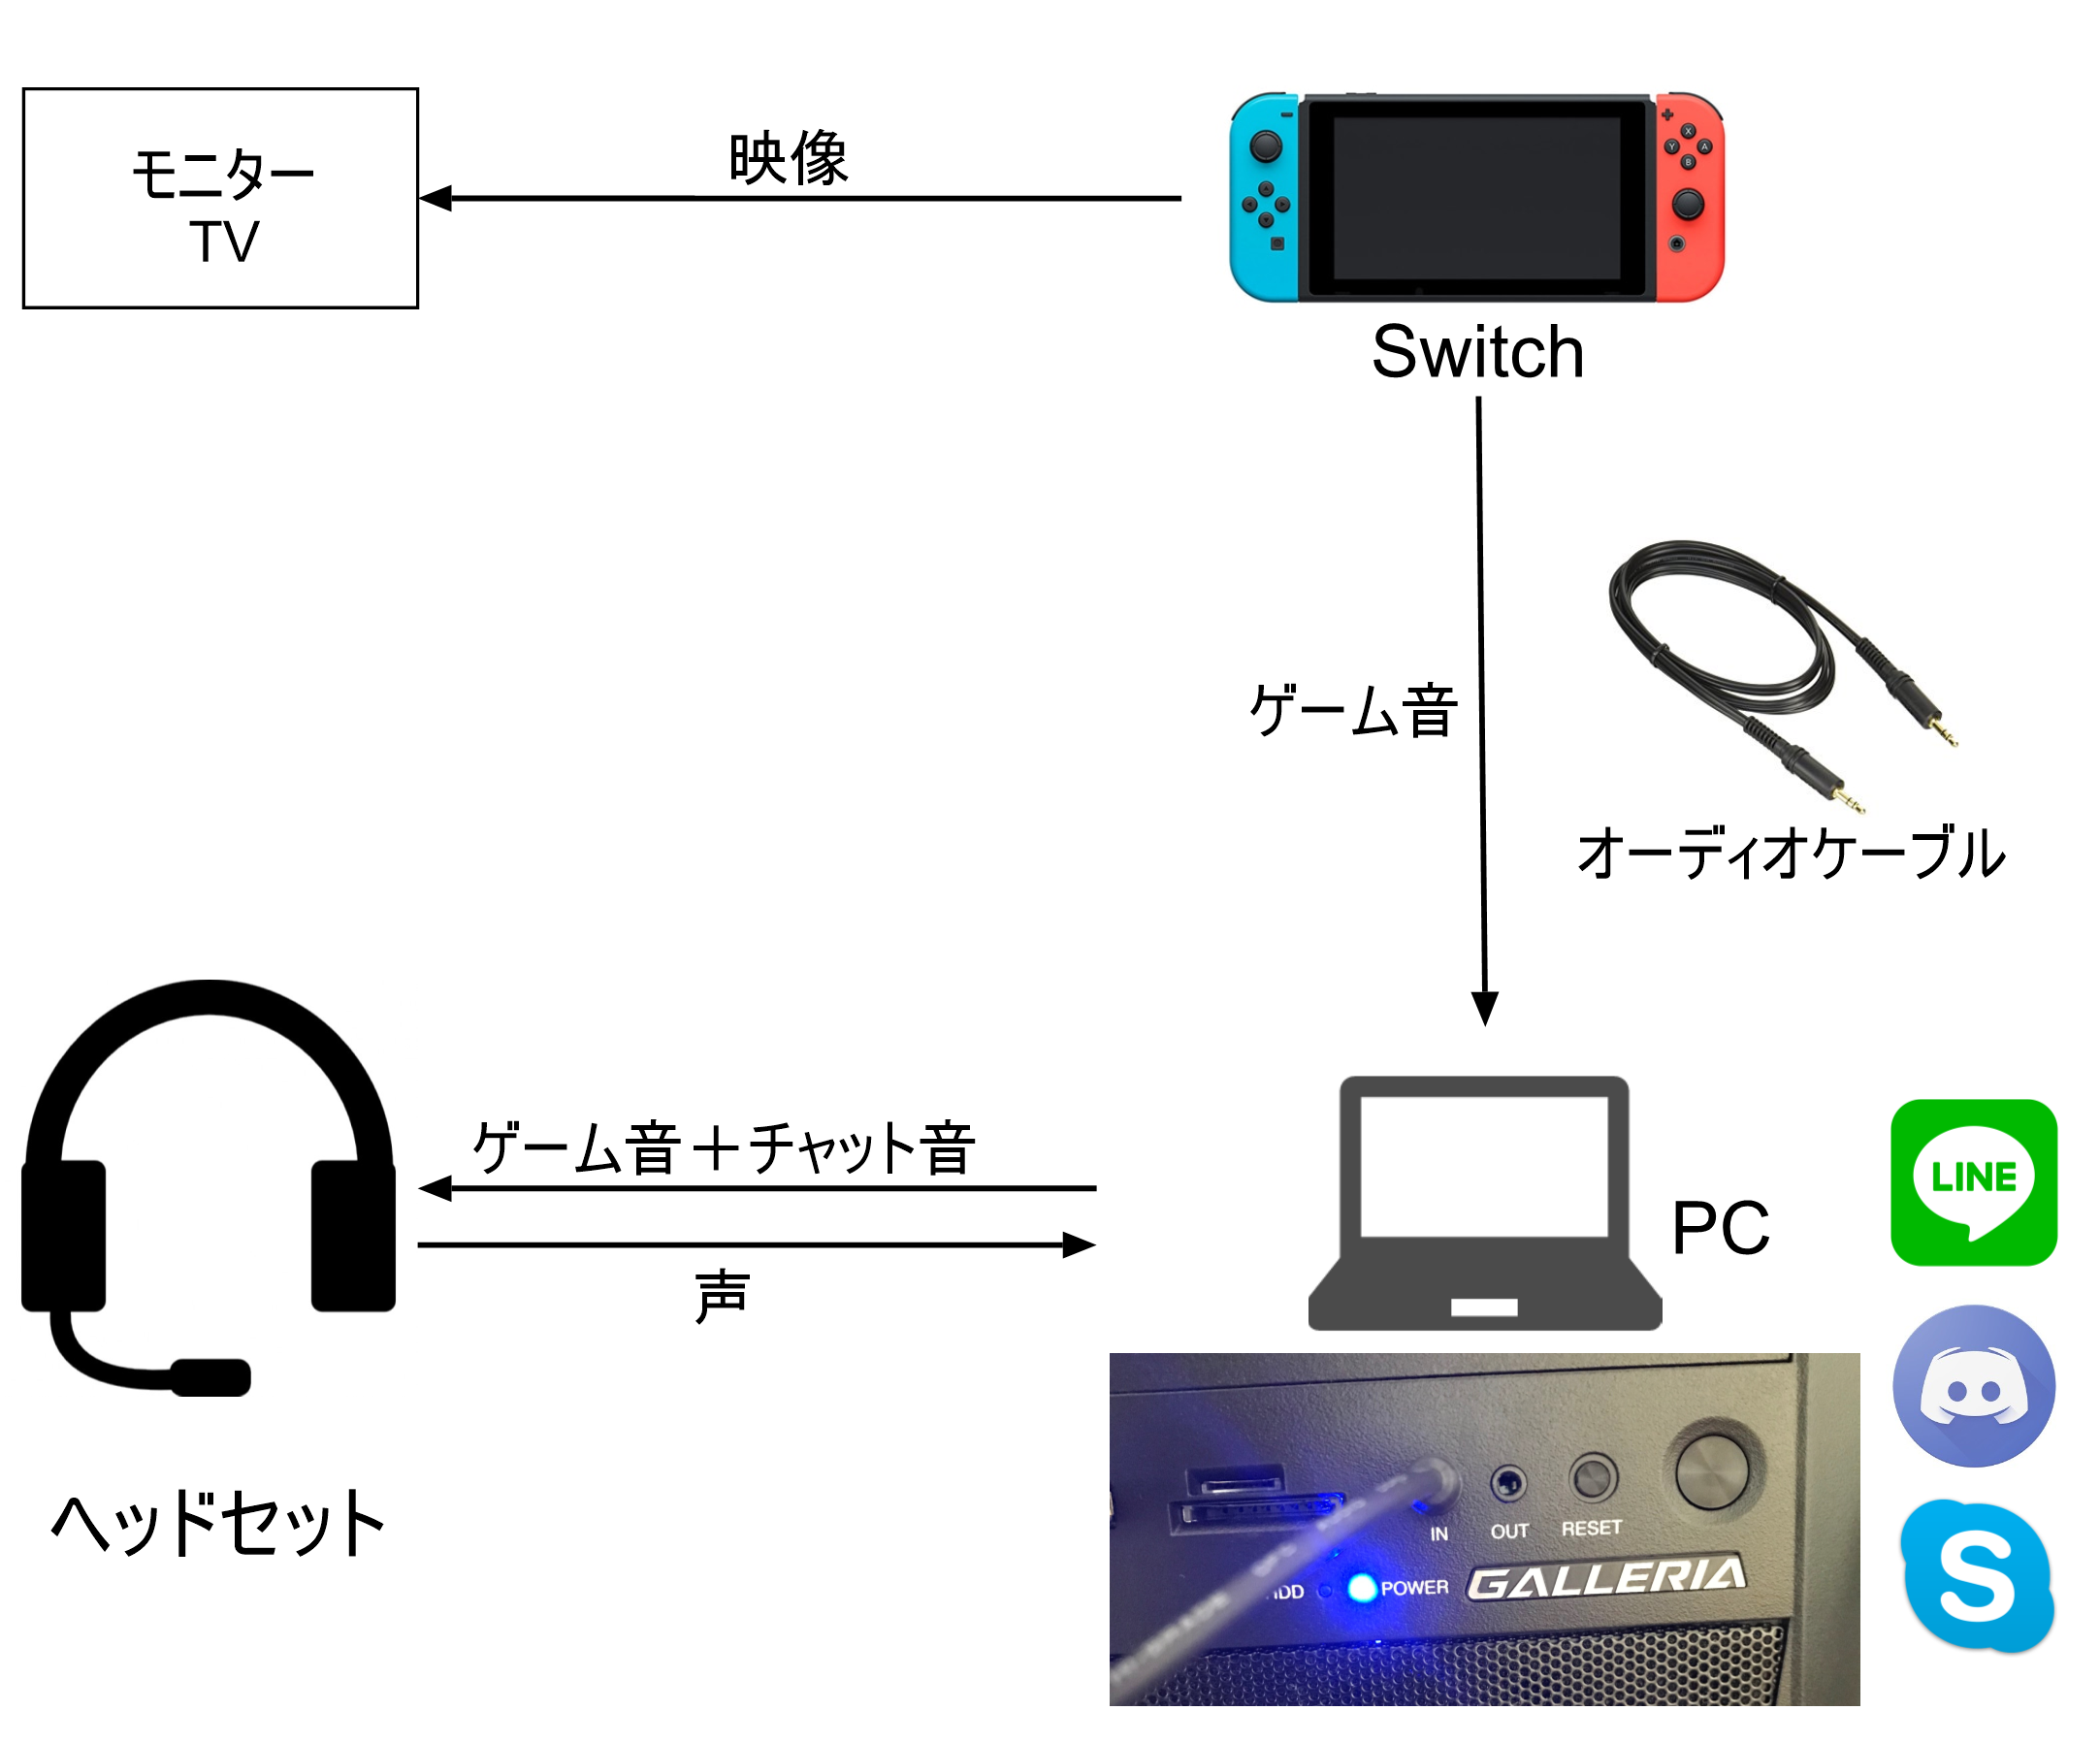 Switch ディス コード Ps4やニンテンドースイッチをdiscordでvc連携しつつ遊ぶ方法 Hdmiモニターで両方の音をミックス